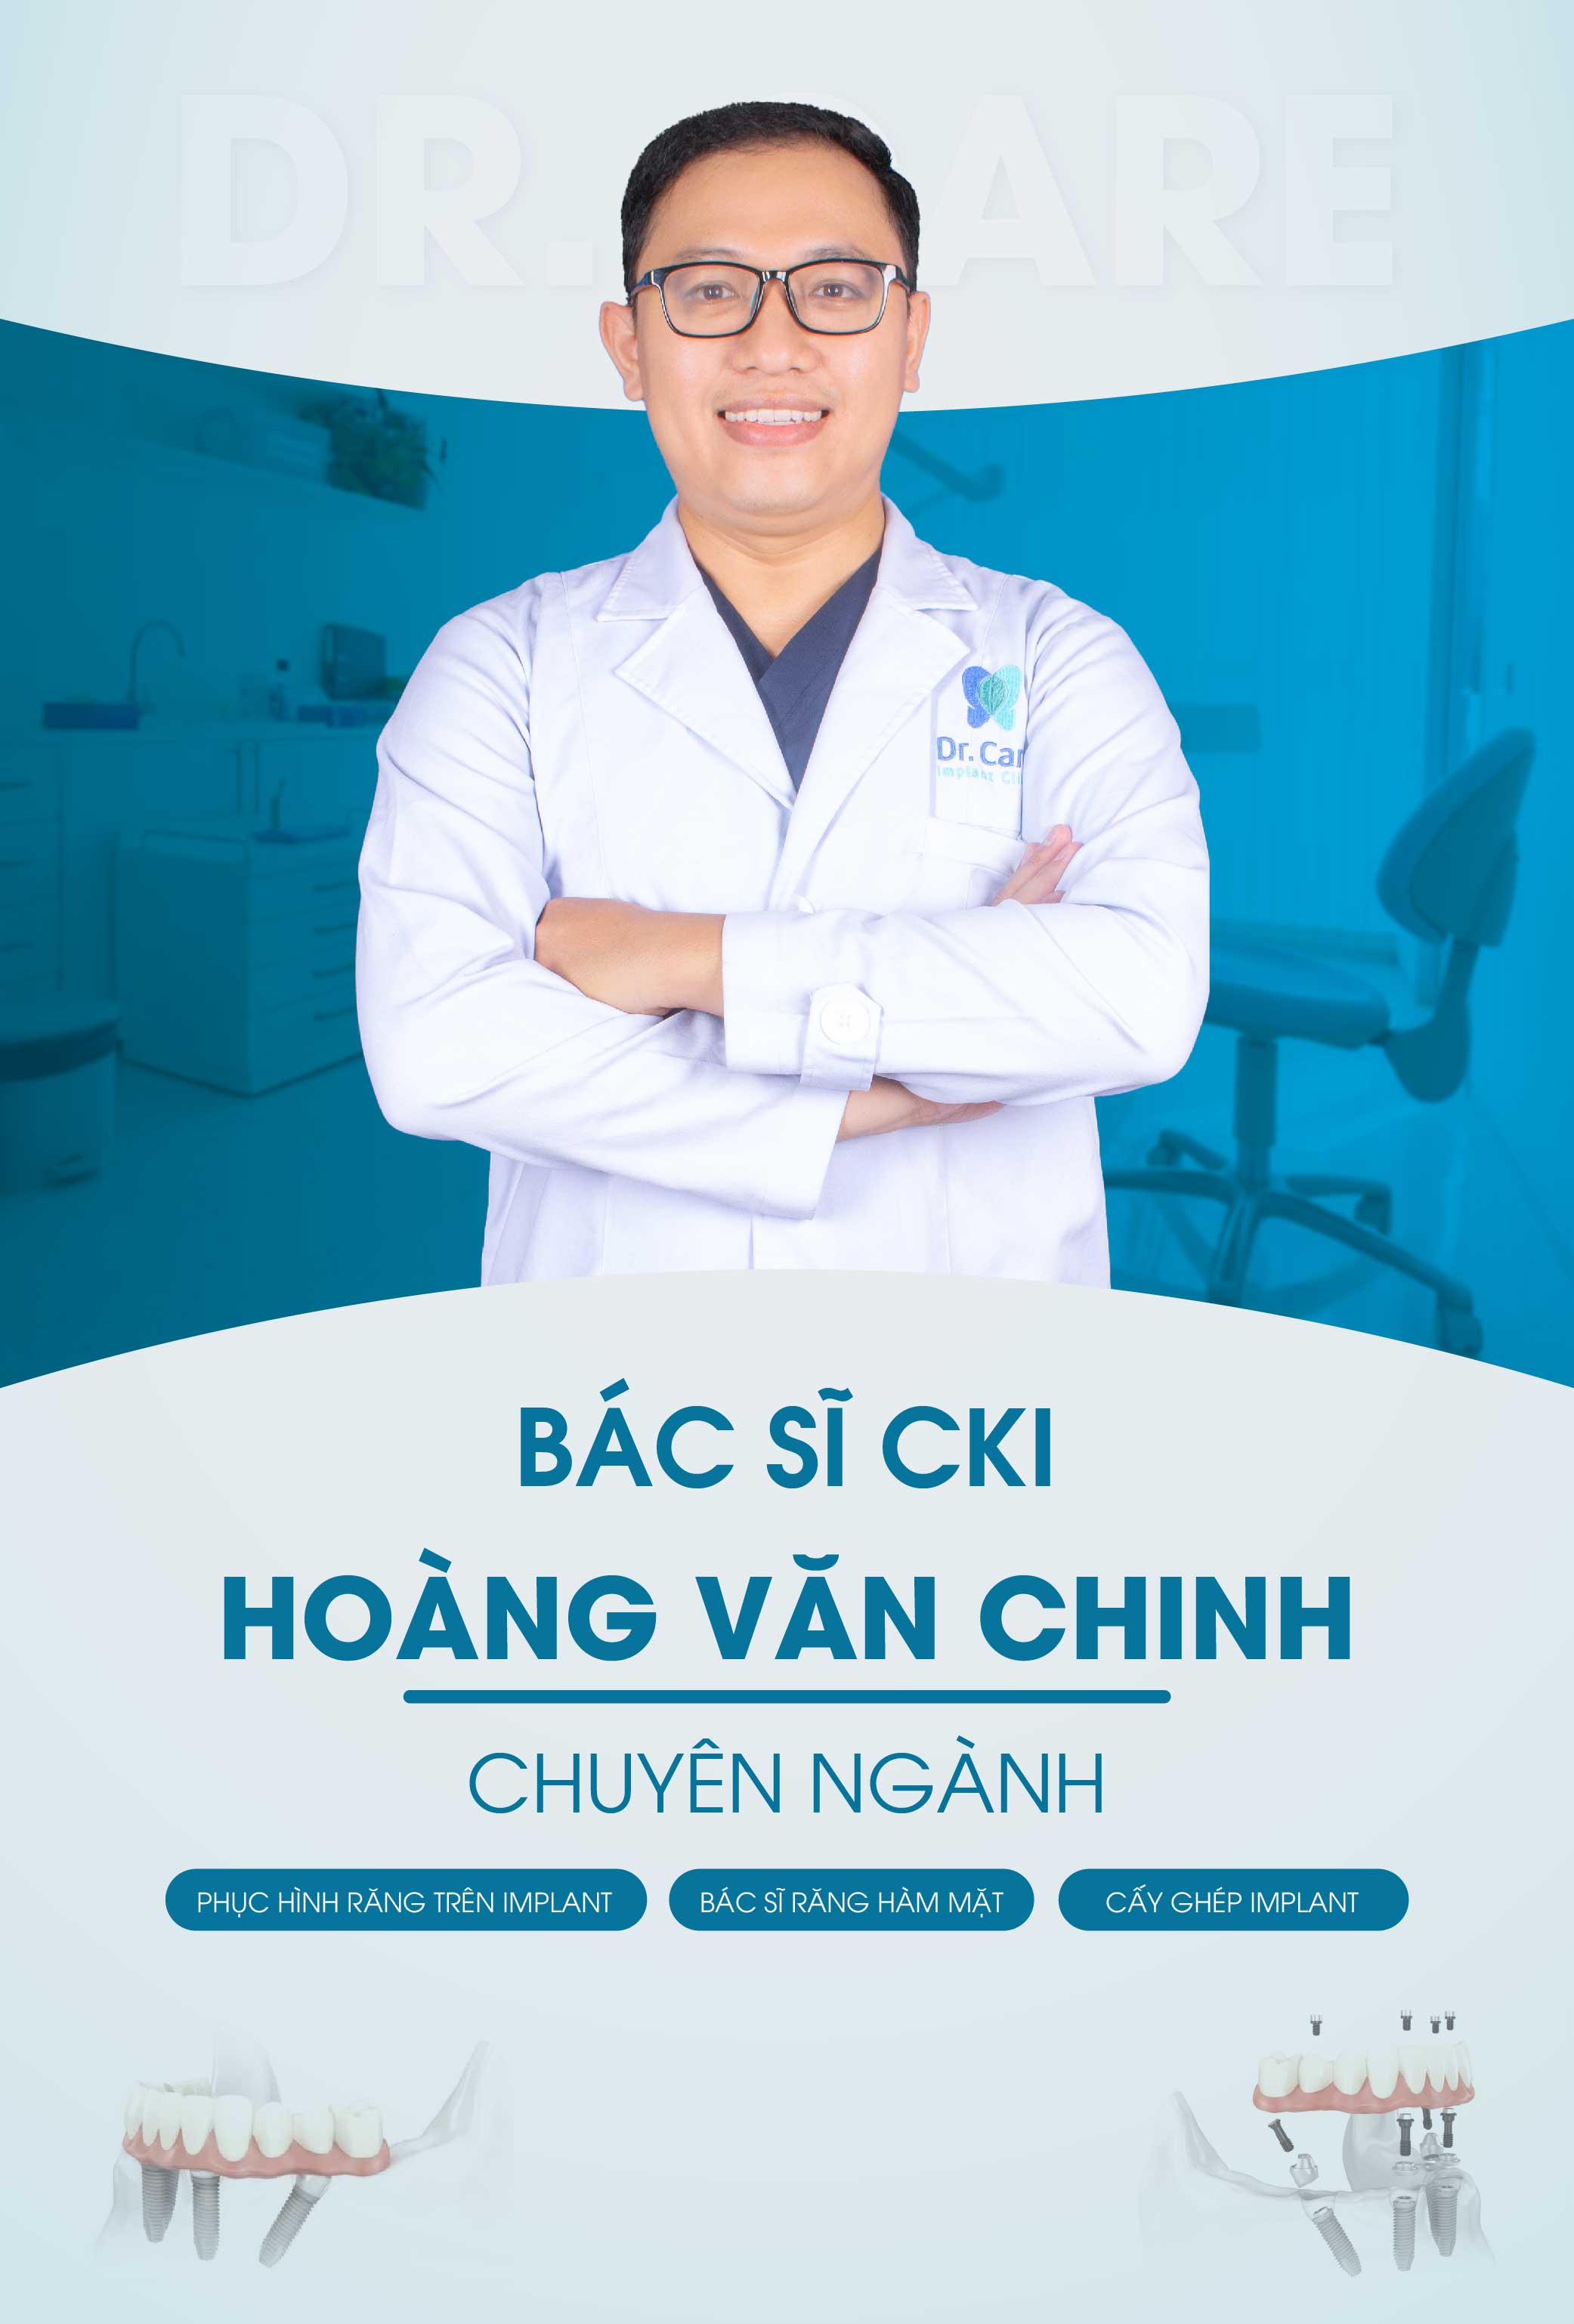 Bác sĩ Hoàng văn chinh